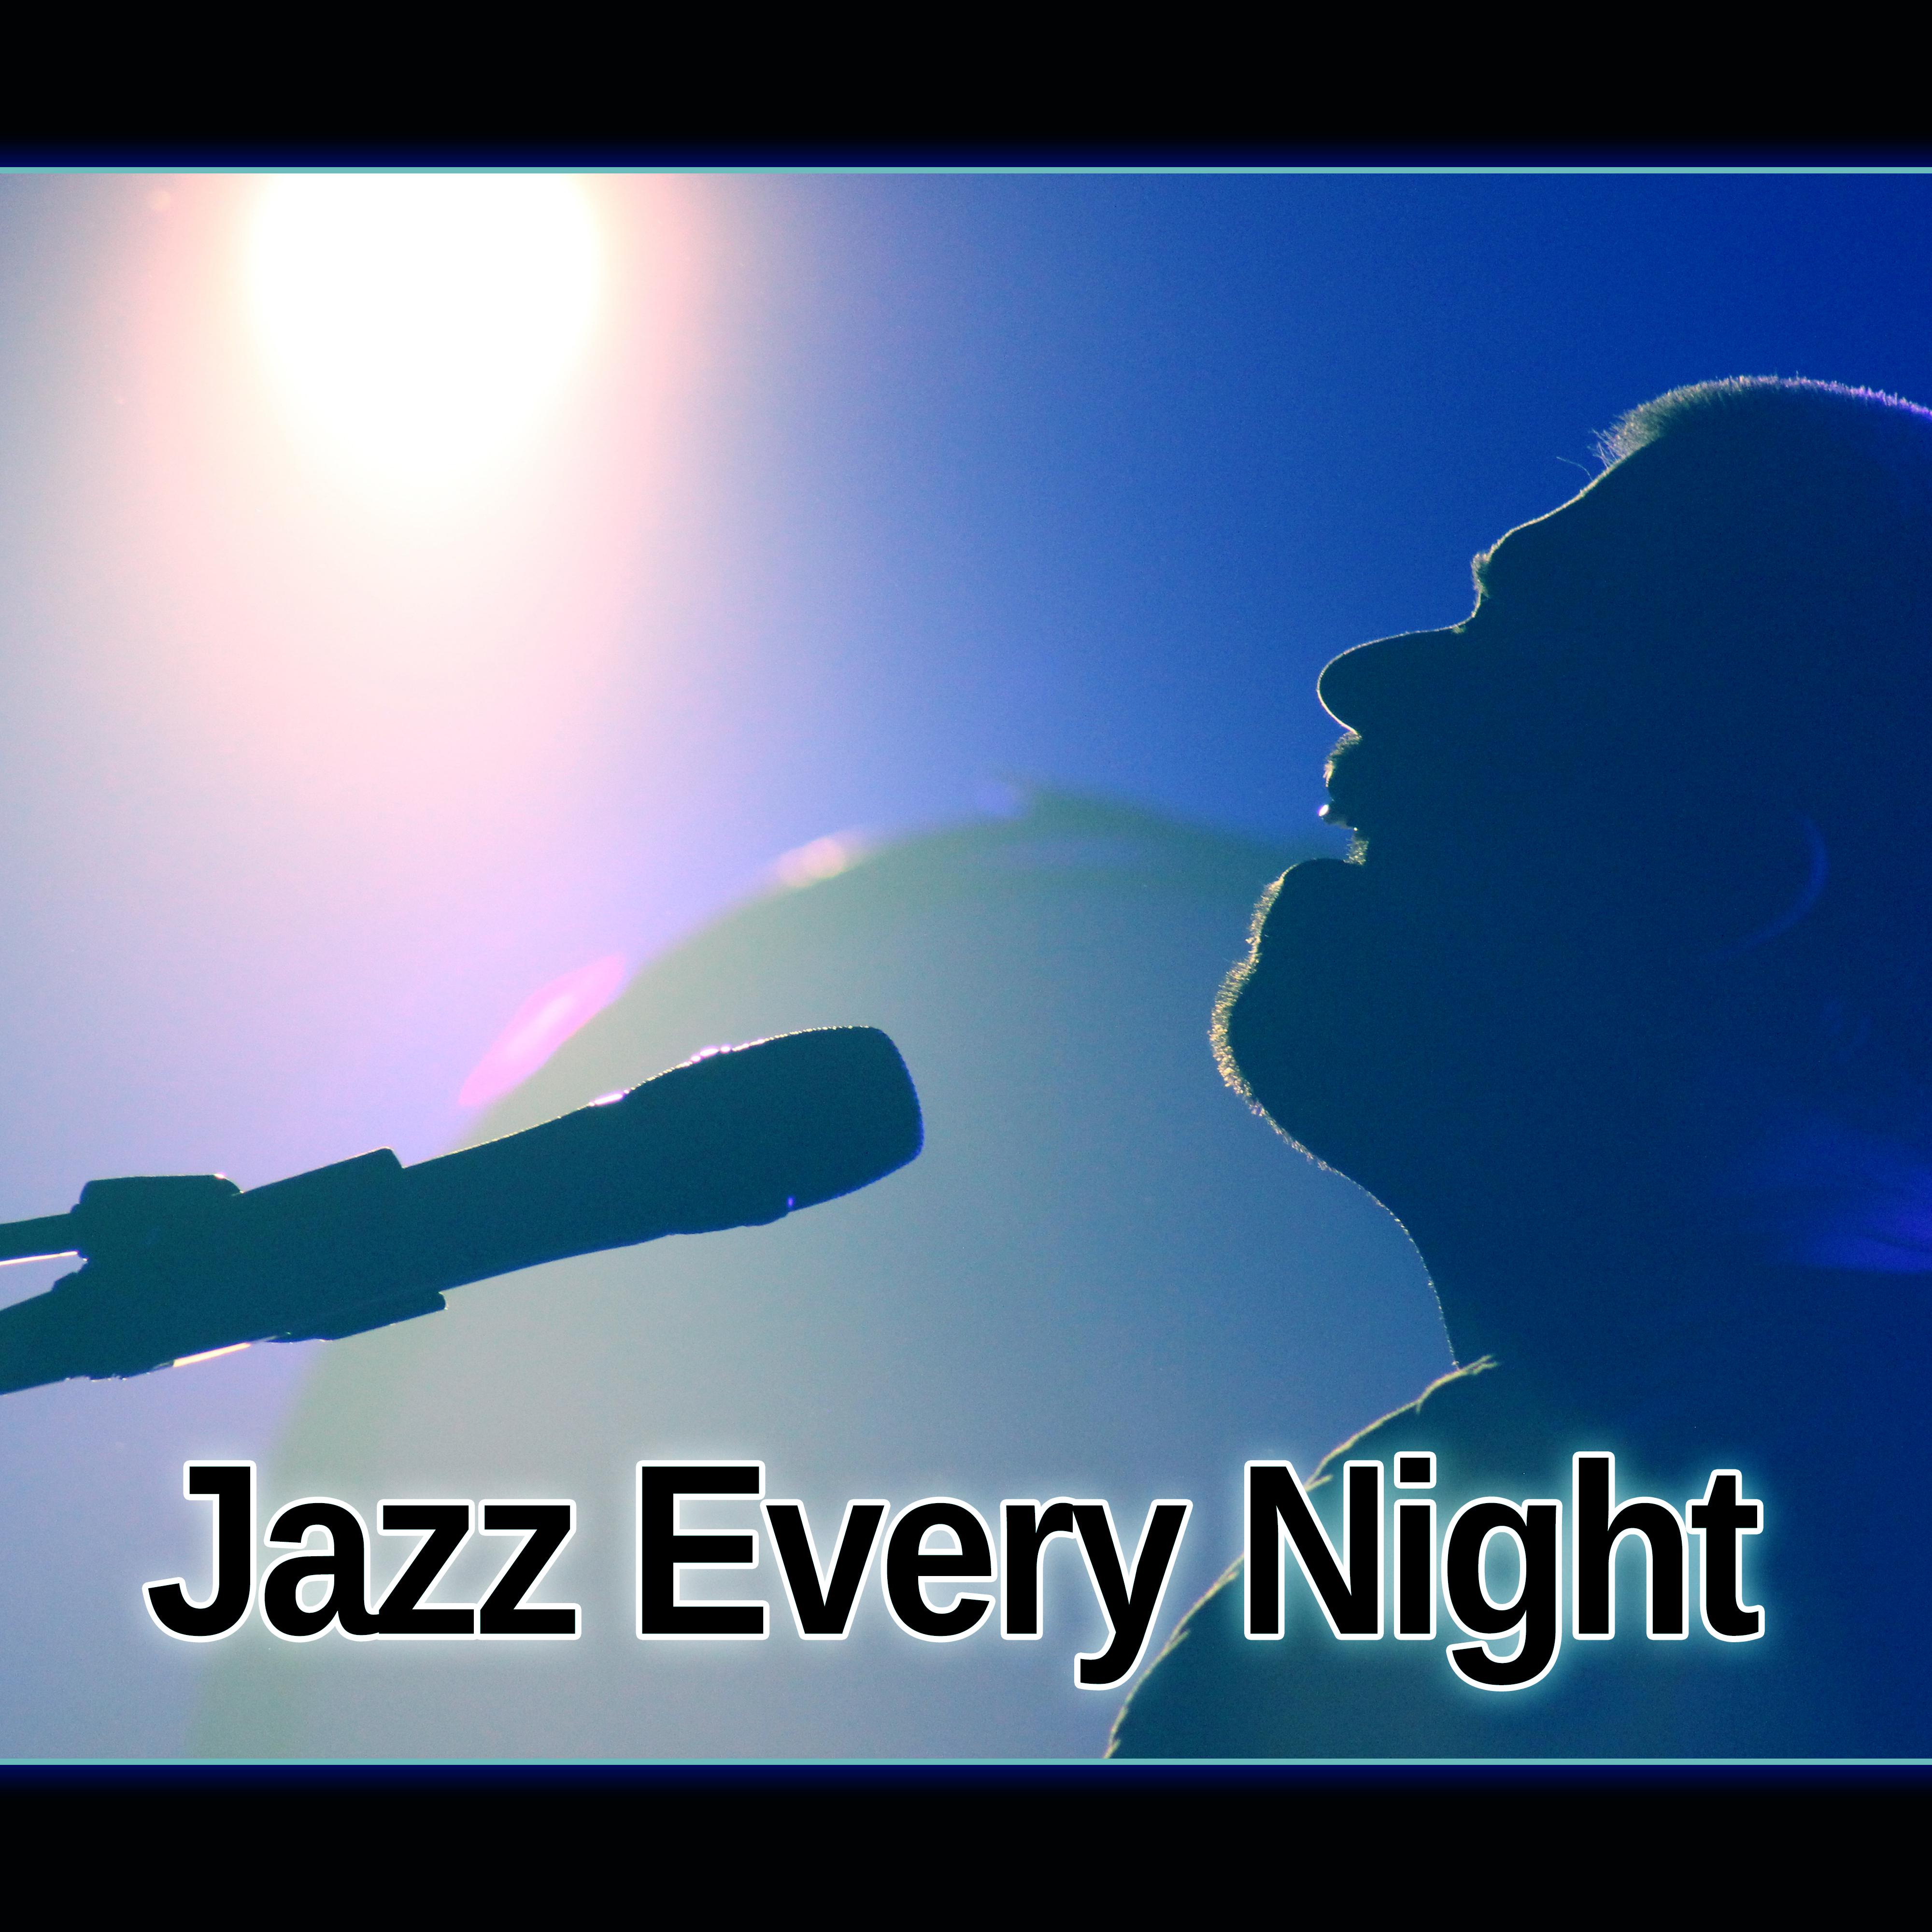 Jazz Every Night – Melow Sounds of Jazz for Jazz Night Club & Bar, Ambient Instrumental Piano, Moody Jazz Easy Listening